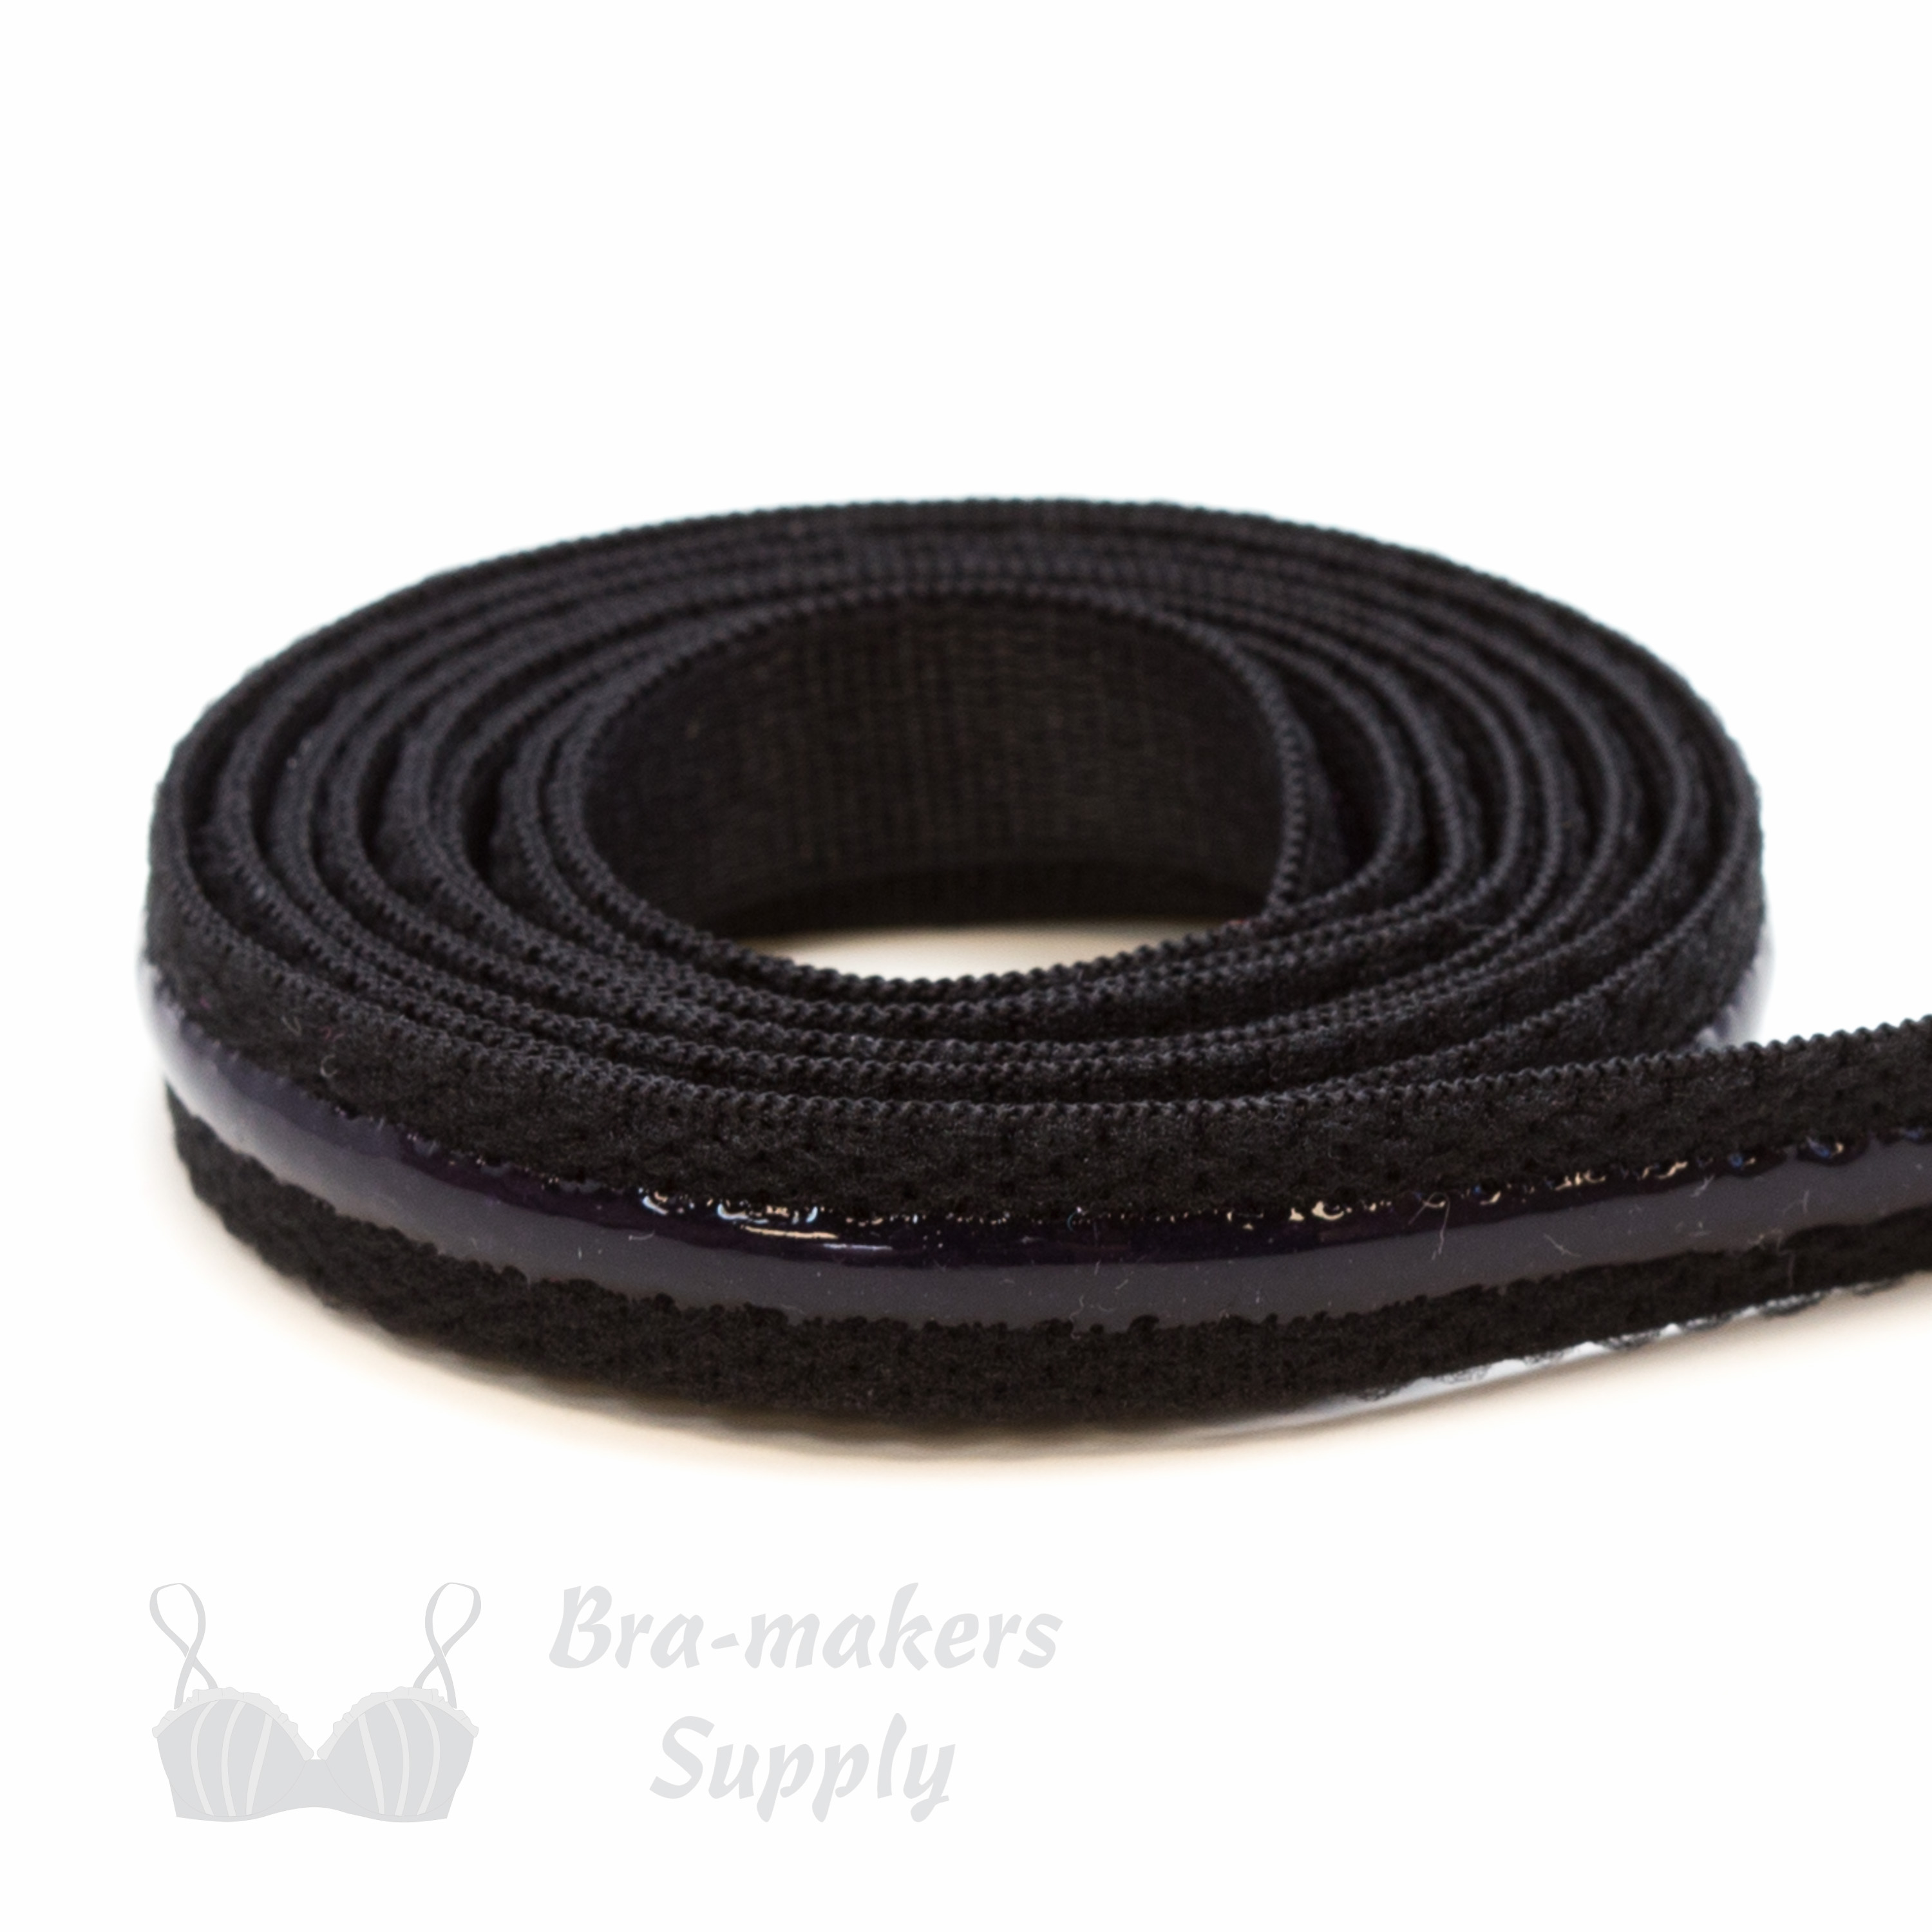 Silicone Gripper Strap Elastic - make non-slip straps - Bra-Makers